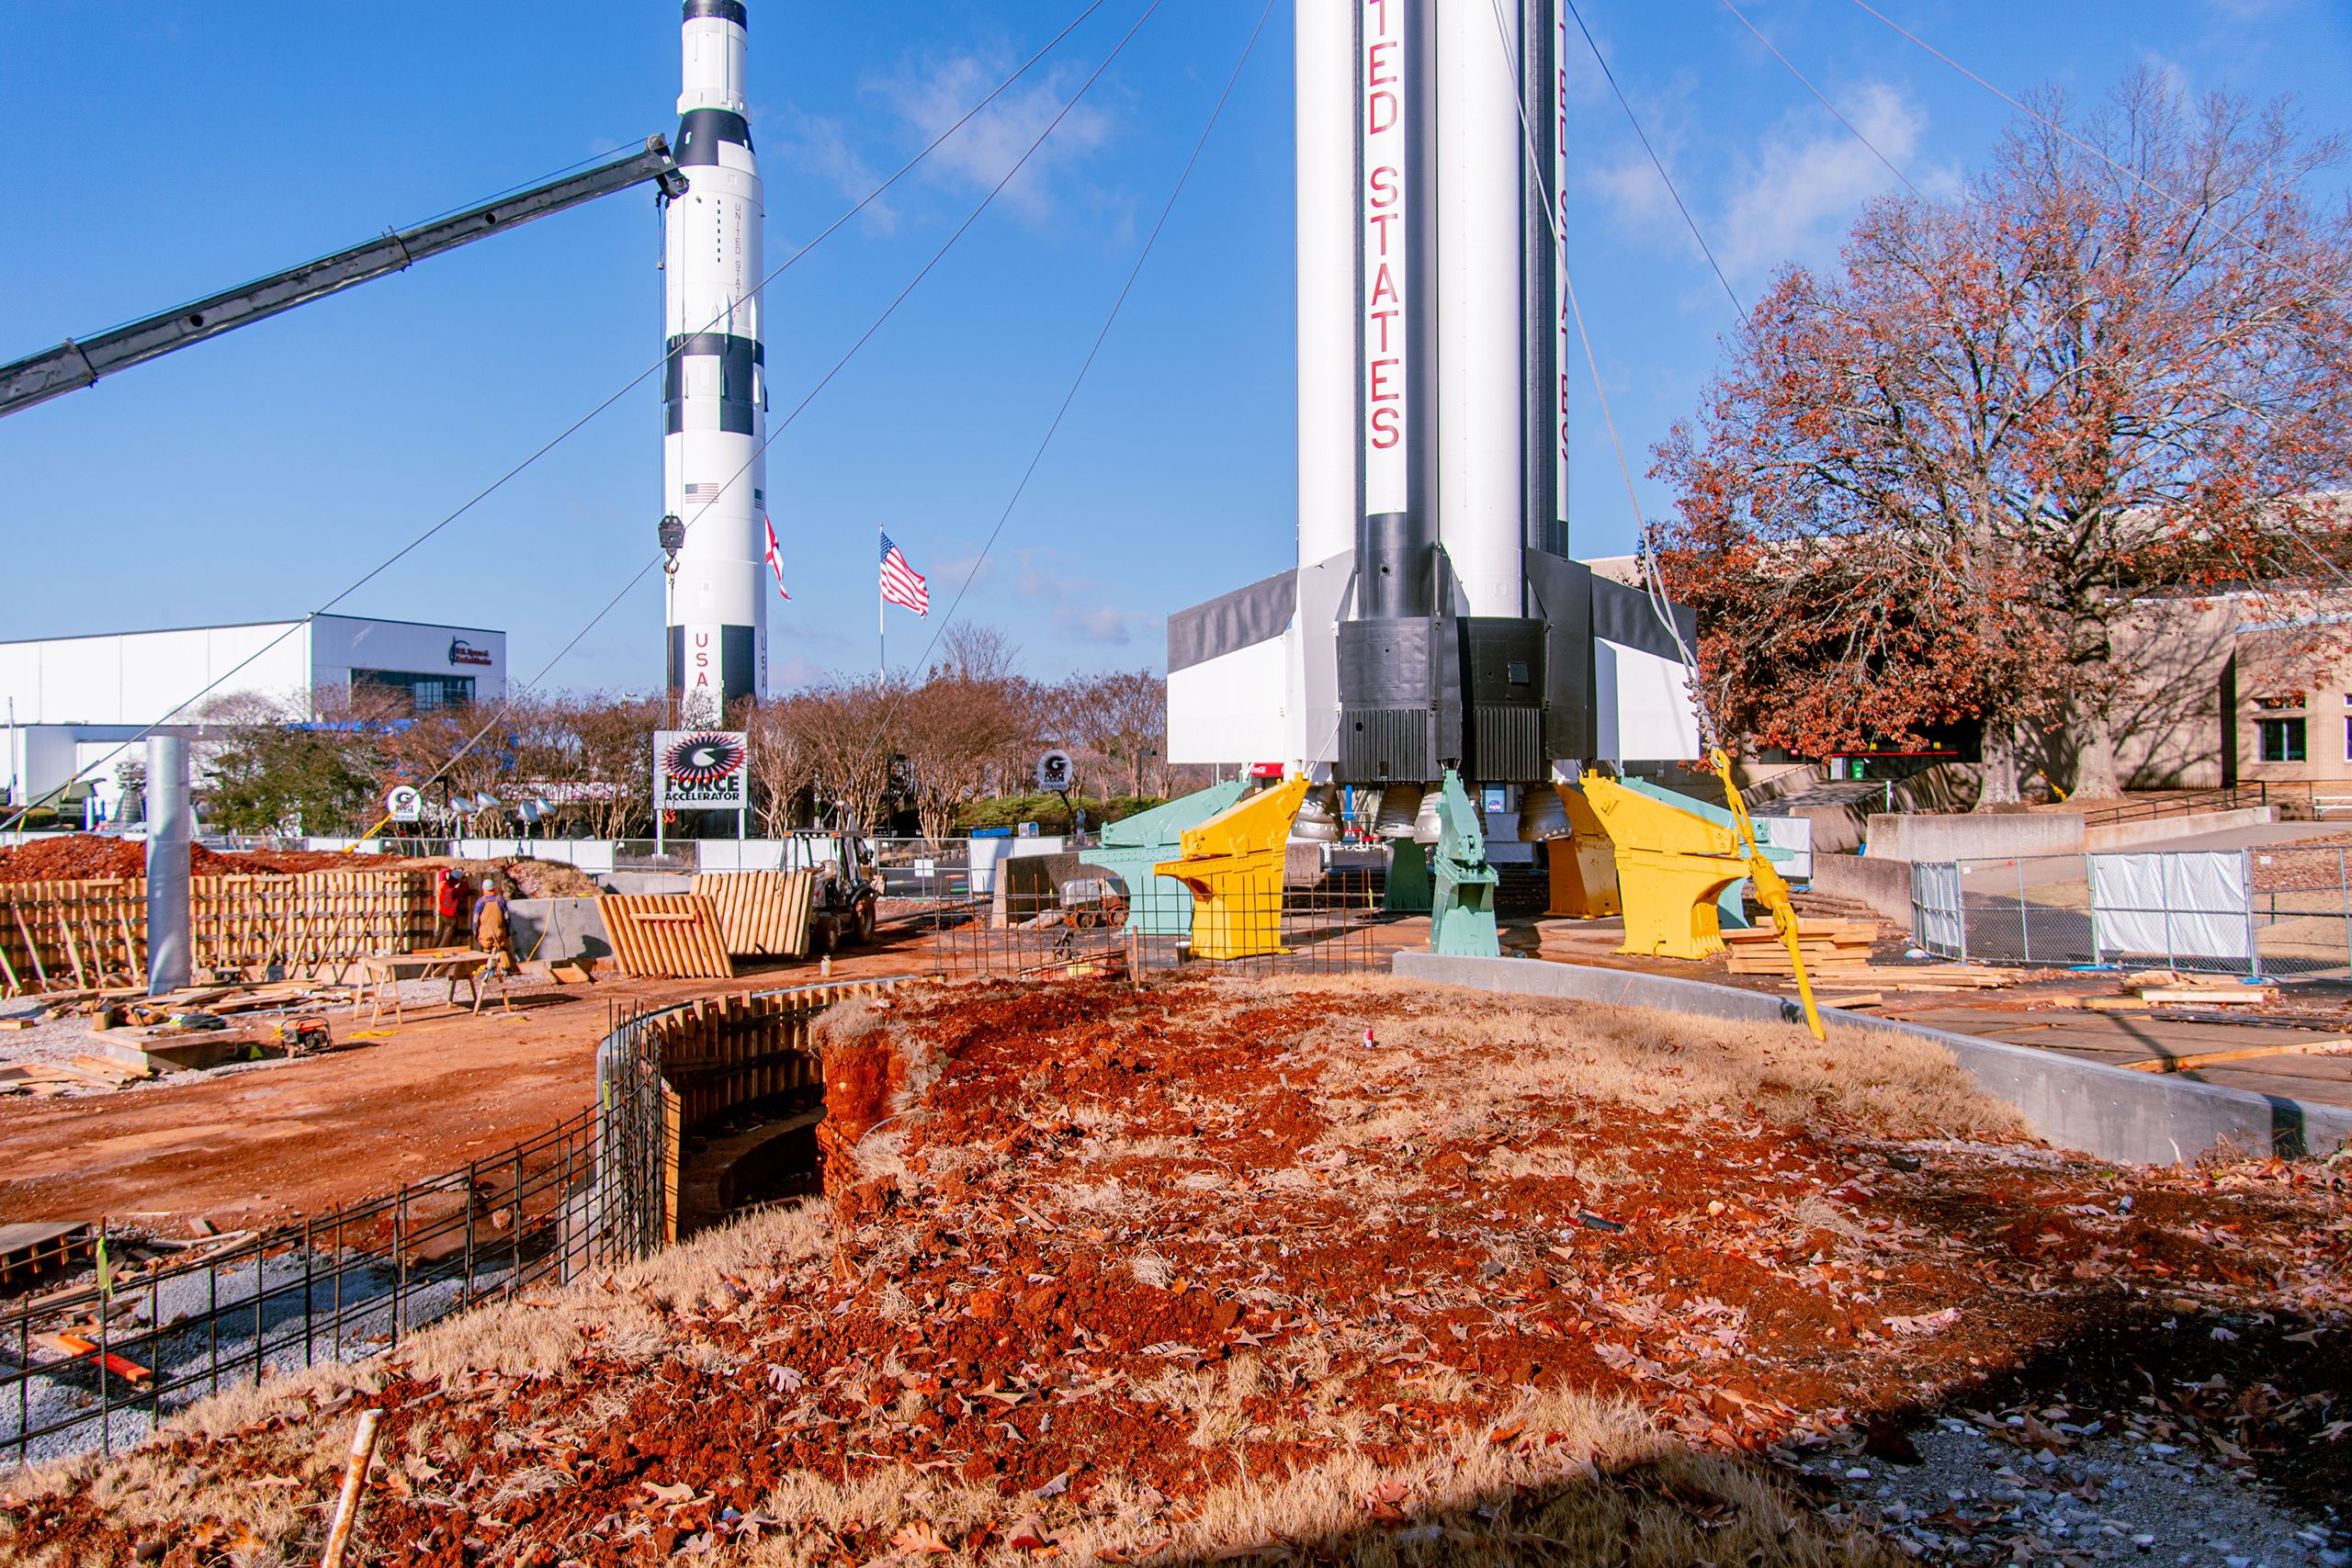 Site work underway at Rocket park.